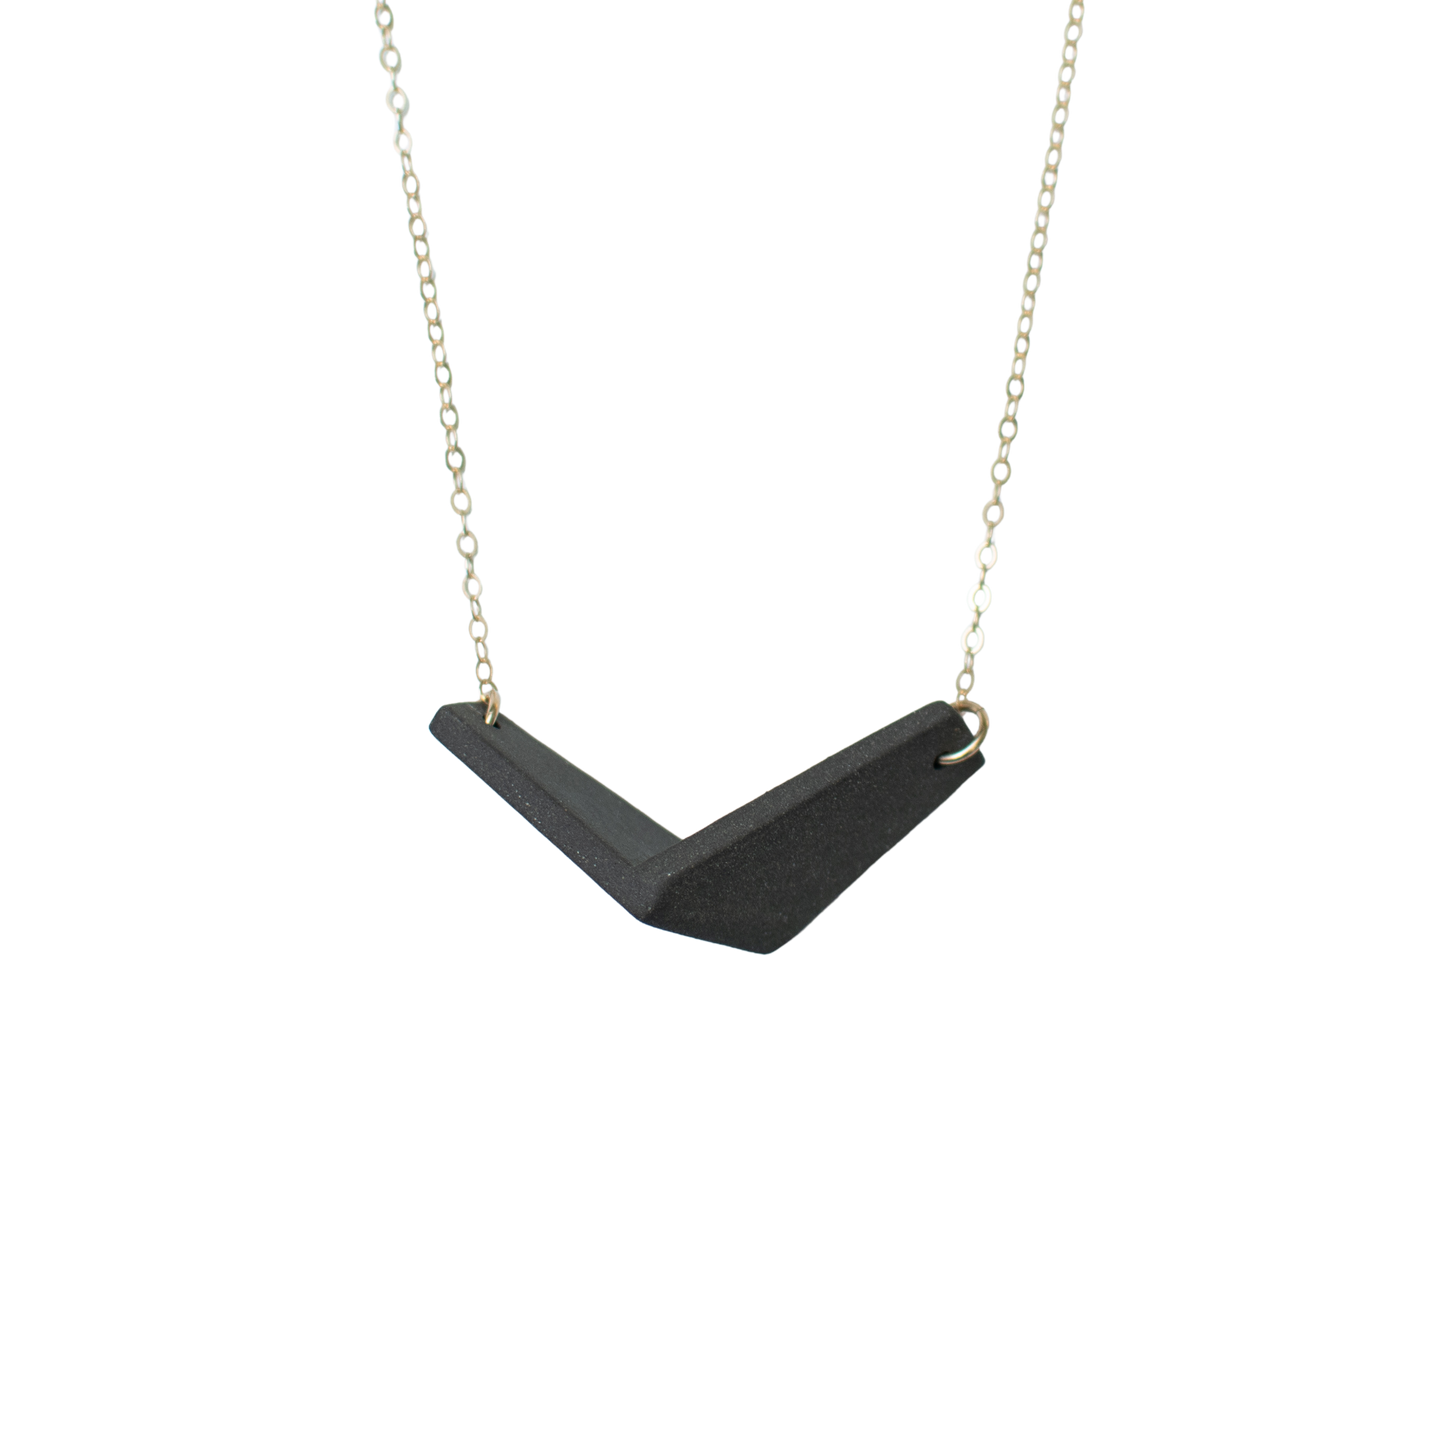 Original Quad Necklace - Size I-III